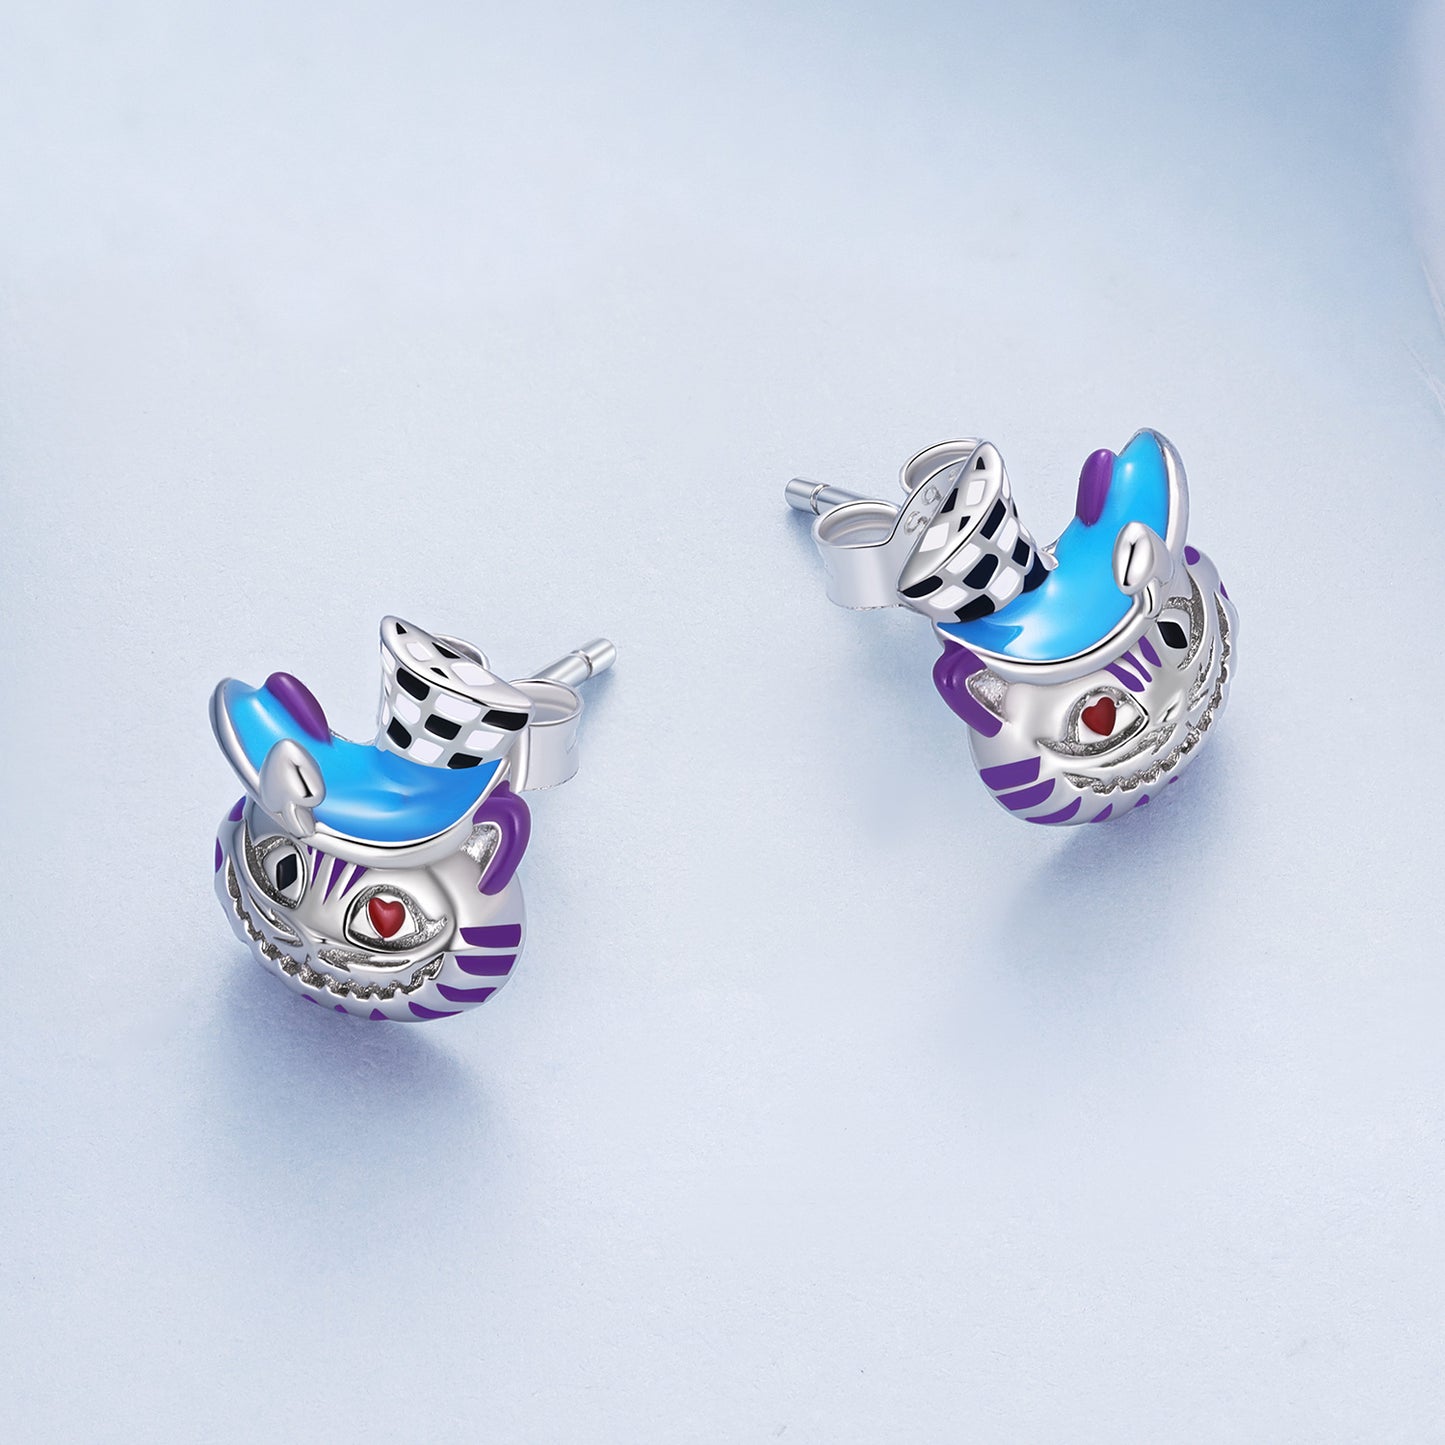 Magician earrings, 92.5% Sterling Silver, Cat ear stud